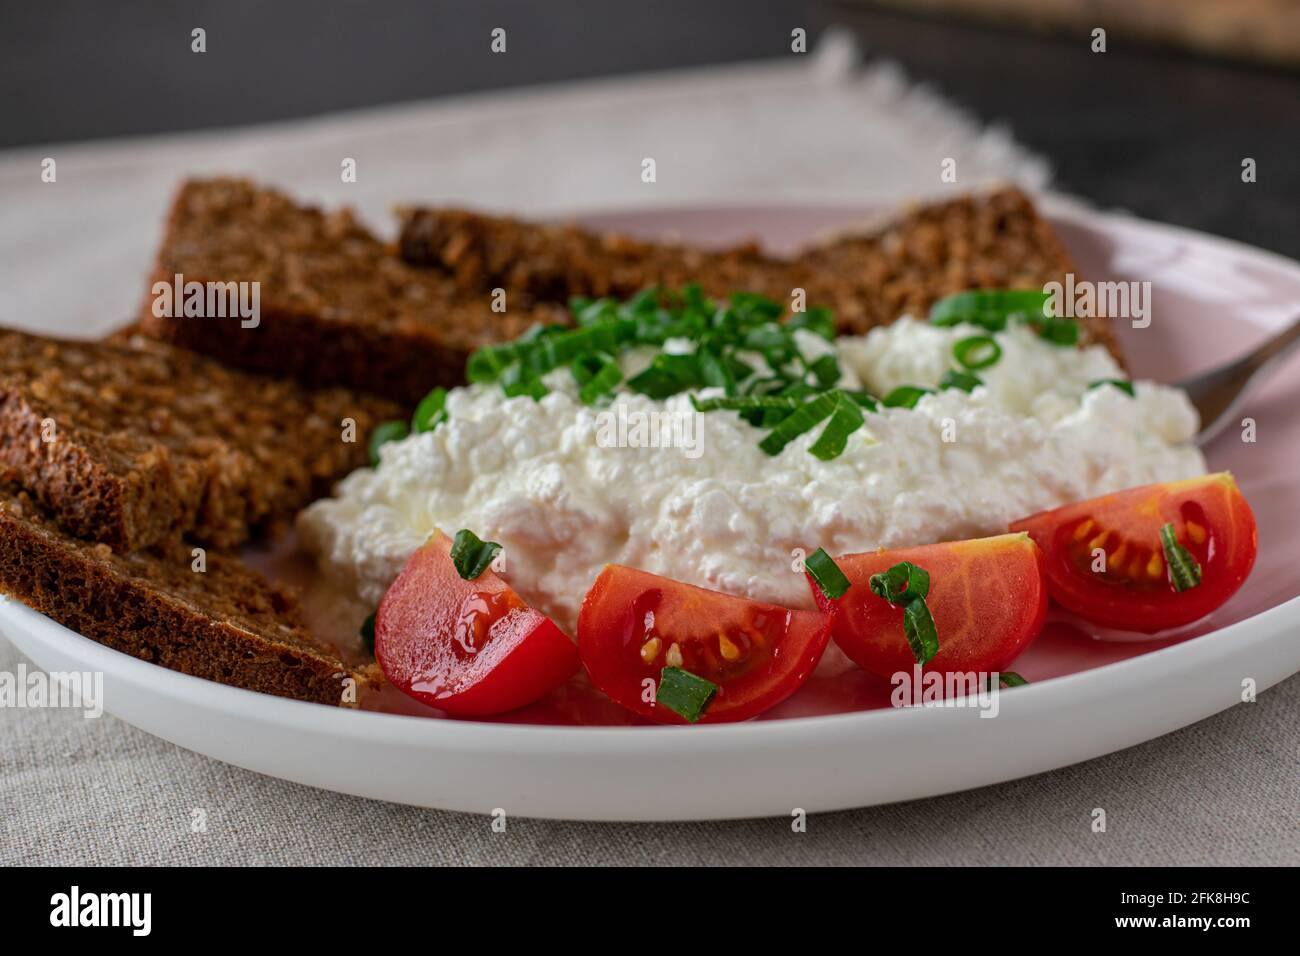 Gesunde Mahlzeit mit Vollkornbrot, Quark und Tomaten auf einem Teller serviert Stockfoto